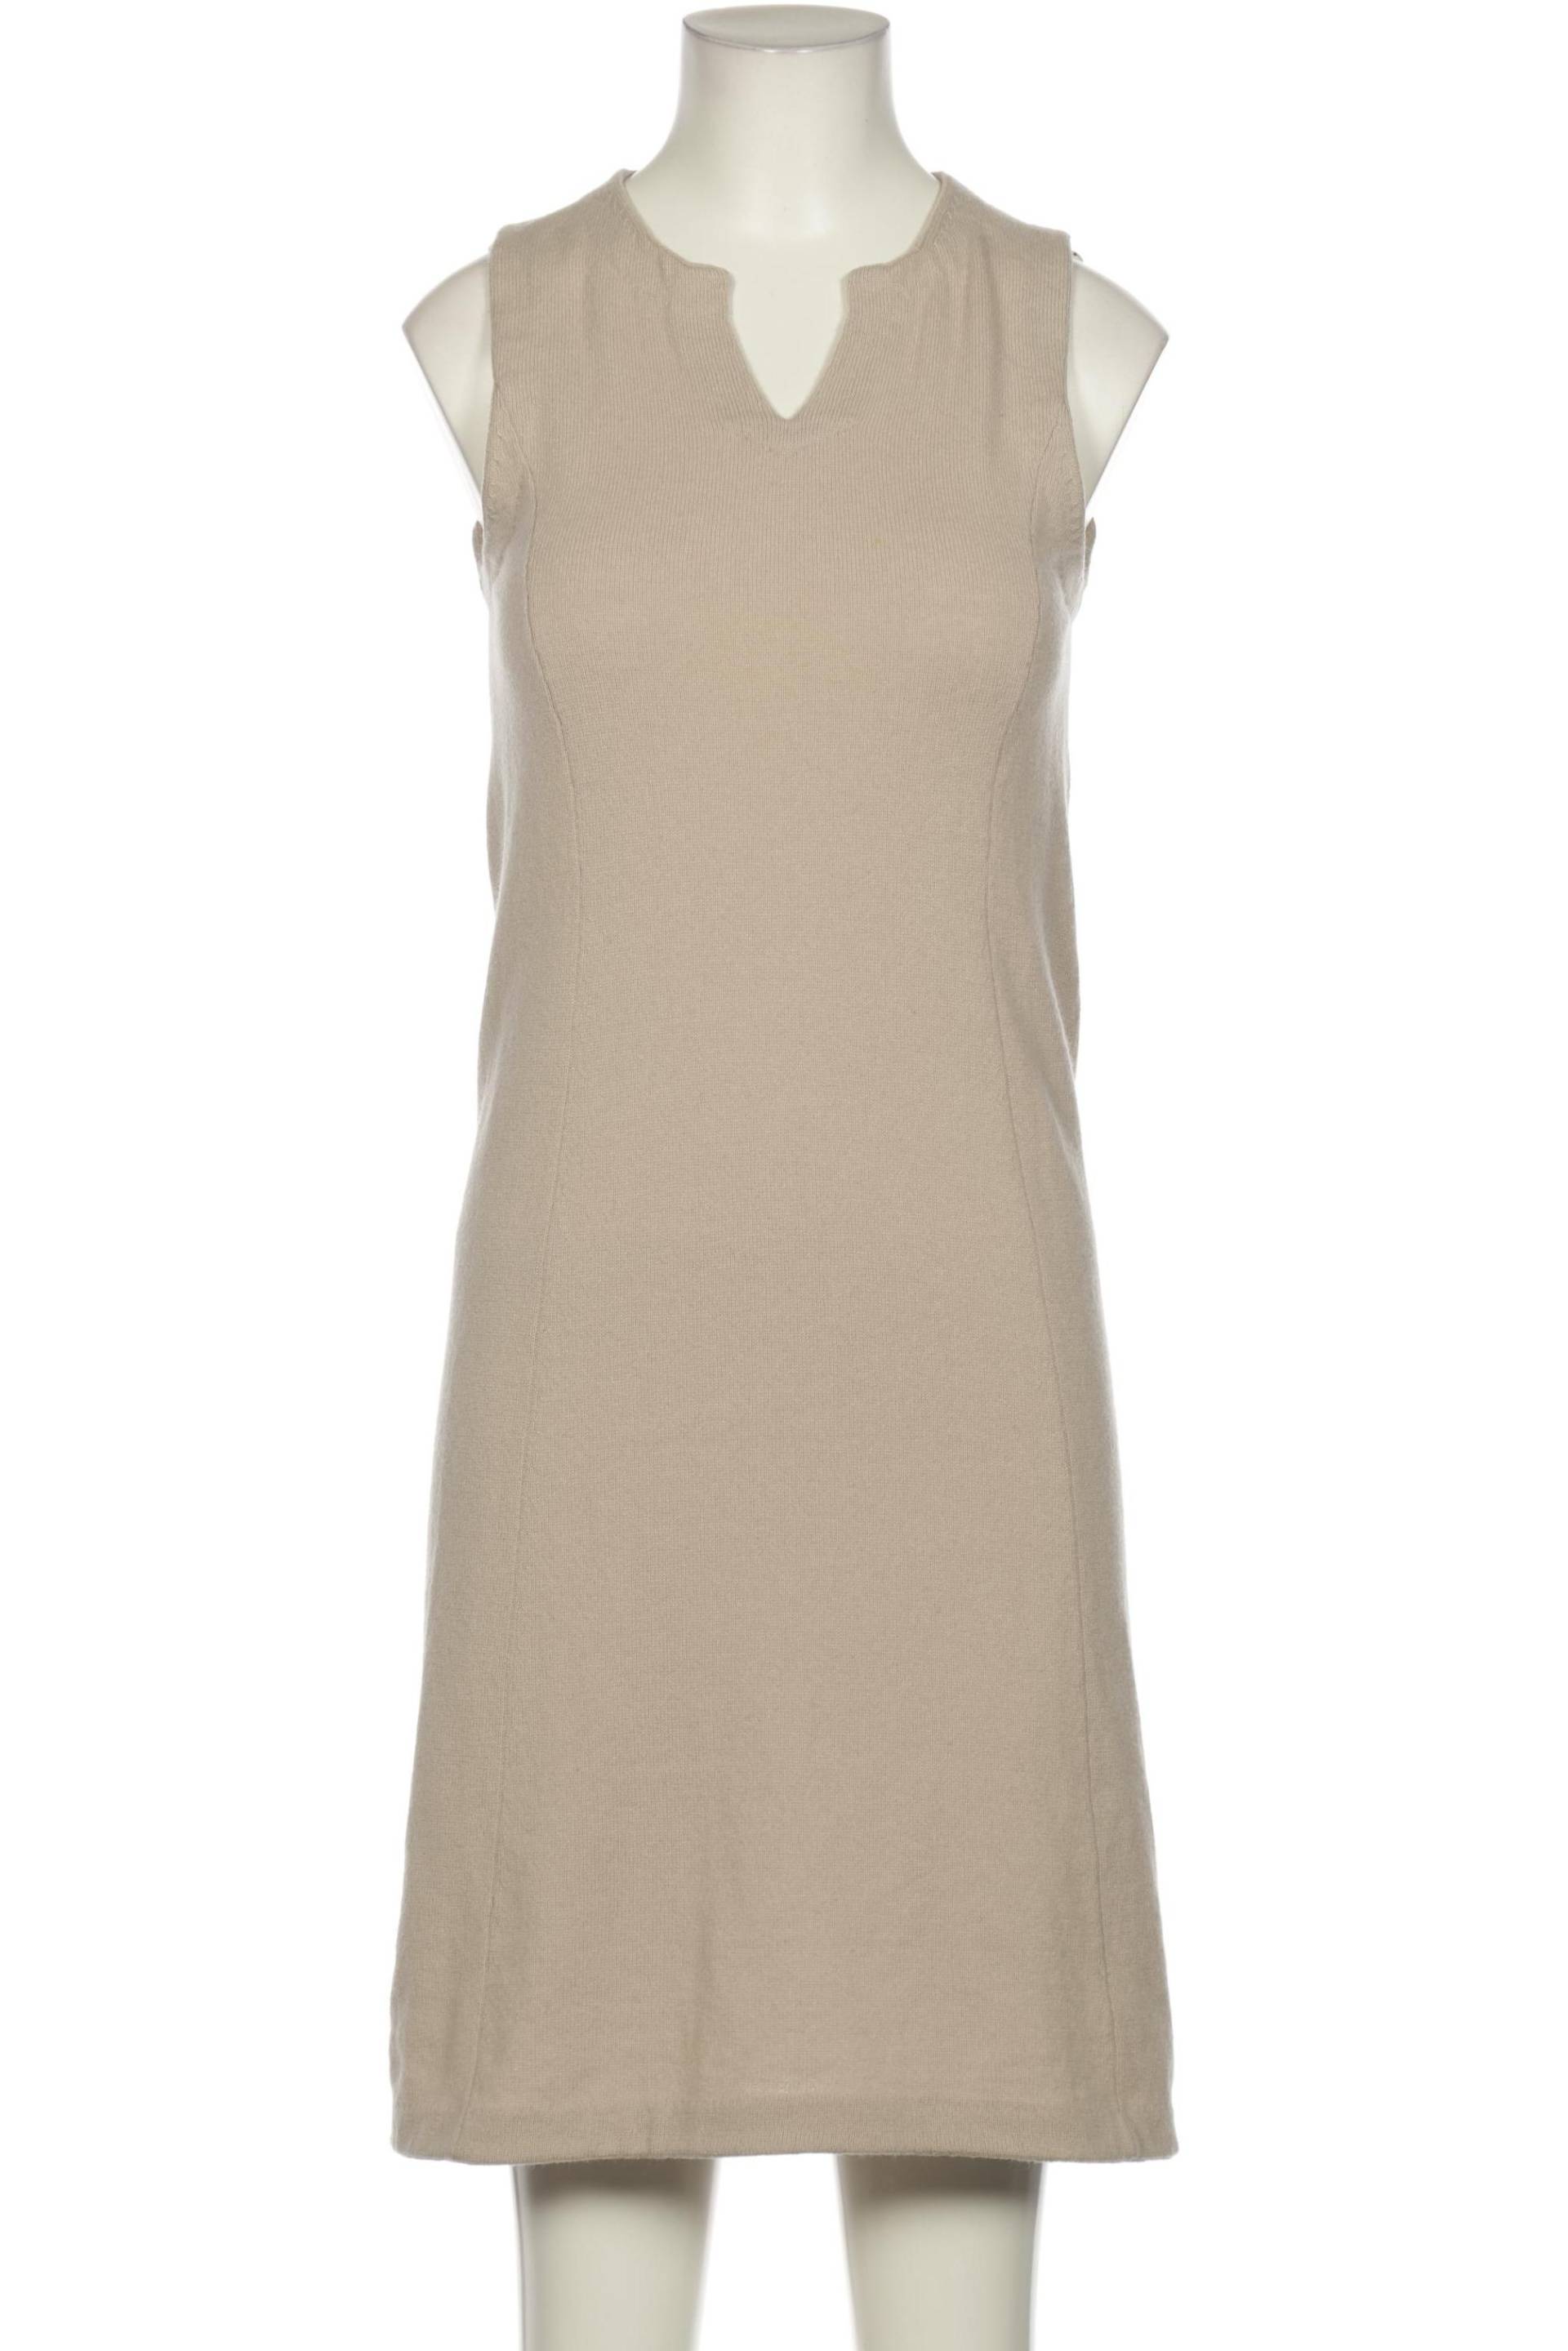 FTC Cashmere Damen Kleid, beige, Gr. 36 von FTC Cashmere